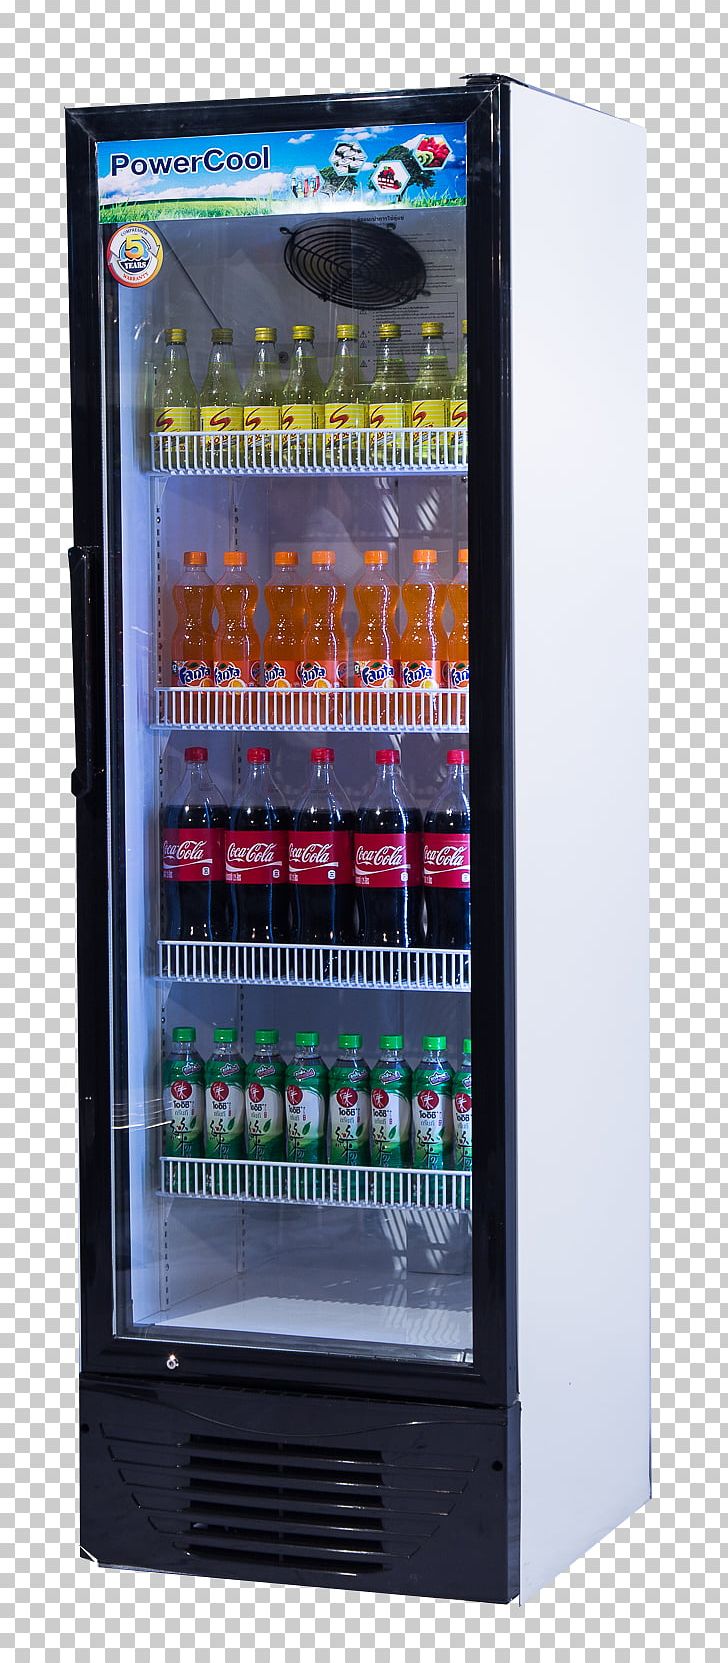 Refrigerator Door Freezers LG Electronics Vending Machines PNG, Clipart, Cake, Door, Drink, Electronics, Freezers Free PNG Download